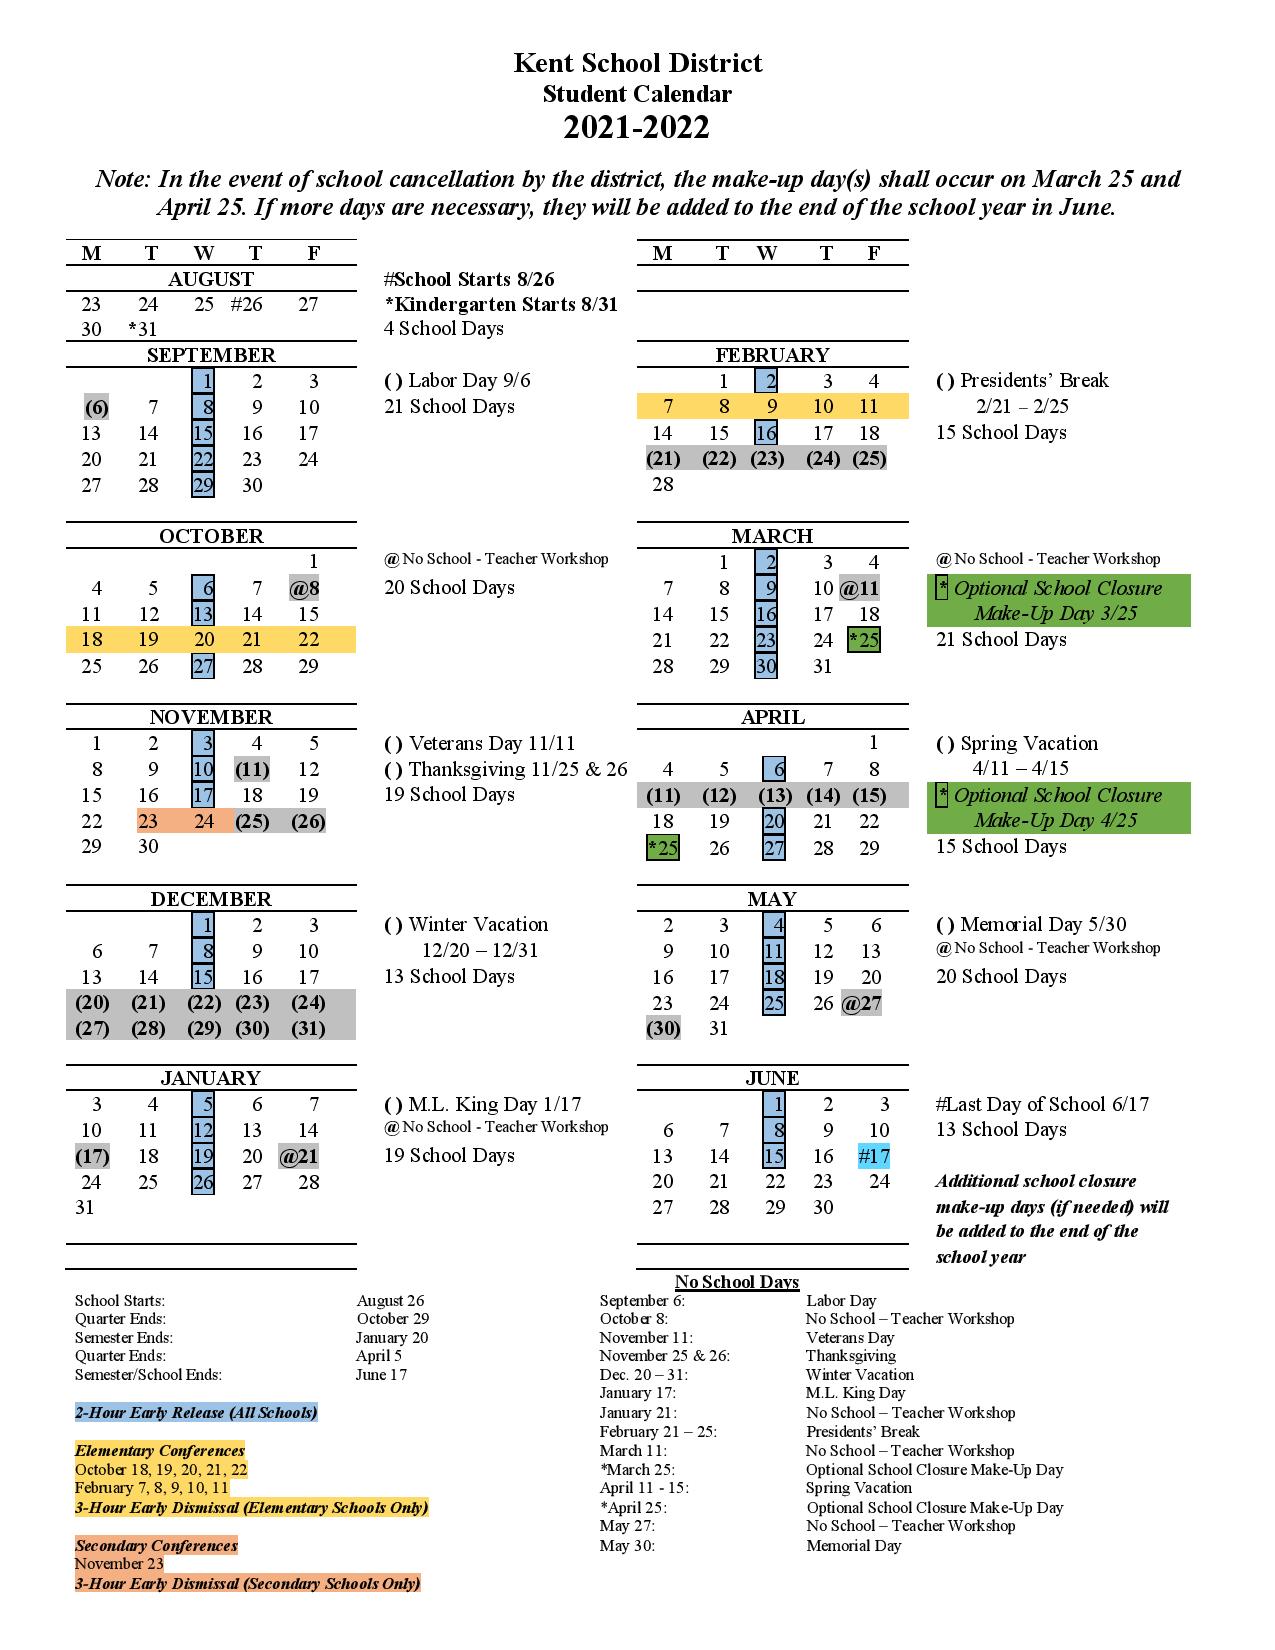 kent-school-district-calendar-2021-2022-in-pdf-download-here